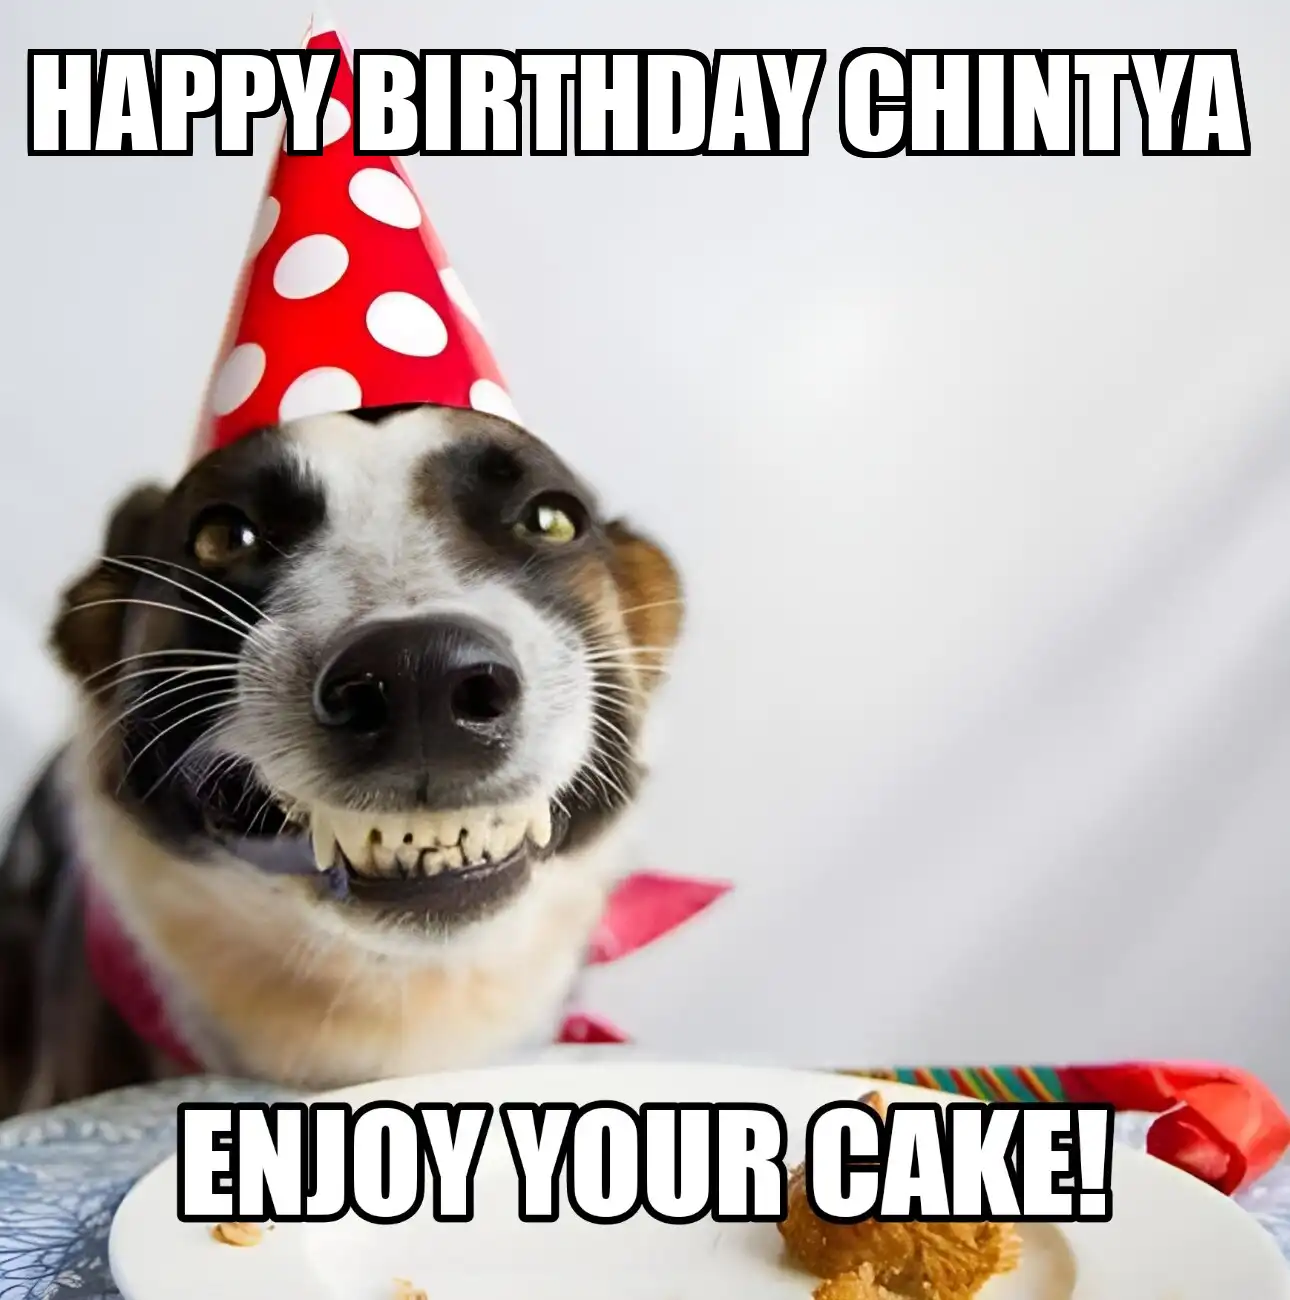 Happy Birthday Chintya Enjoy Your Cake Dog Meme